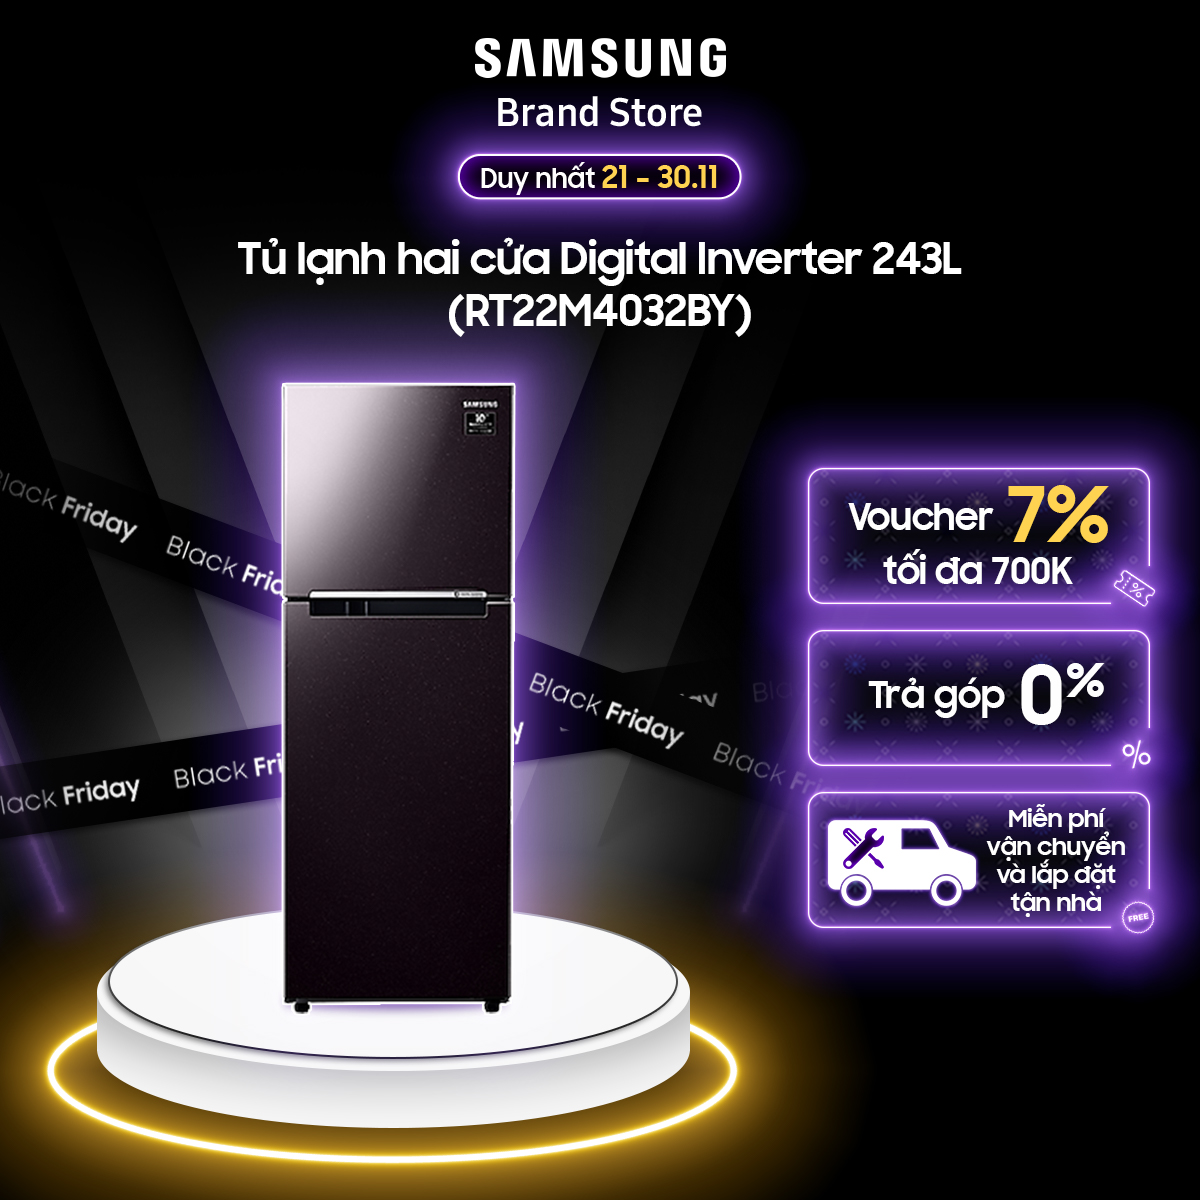 Tủ lạnh Samsung hai cửa Digital Inverter 243L (RT22M4032BY) - Miễn phí giao + lắp đặt toàn quốc